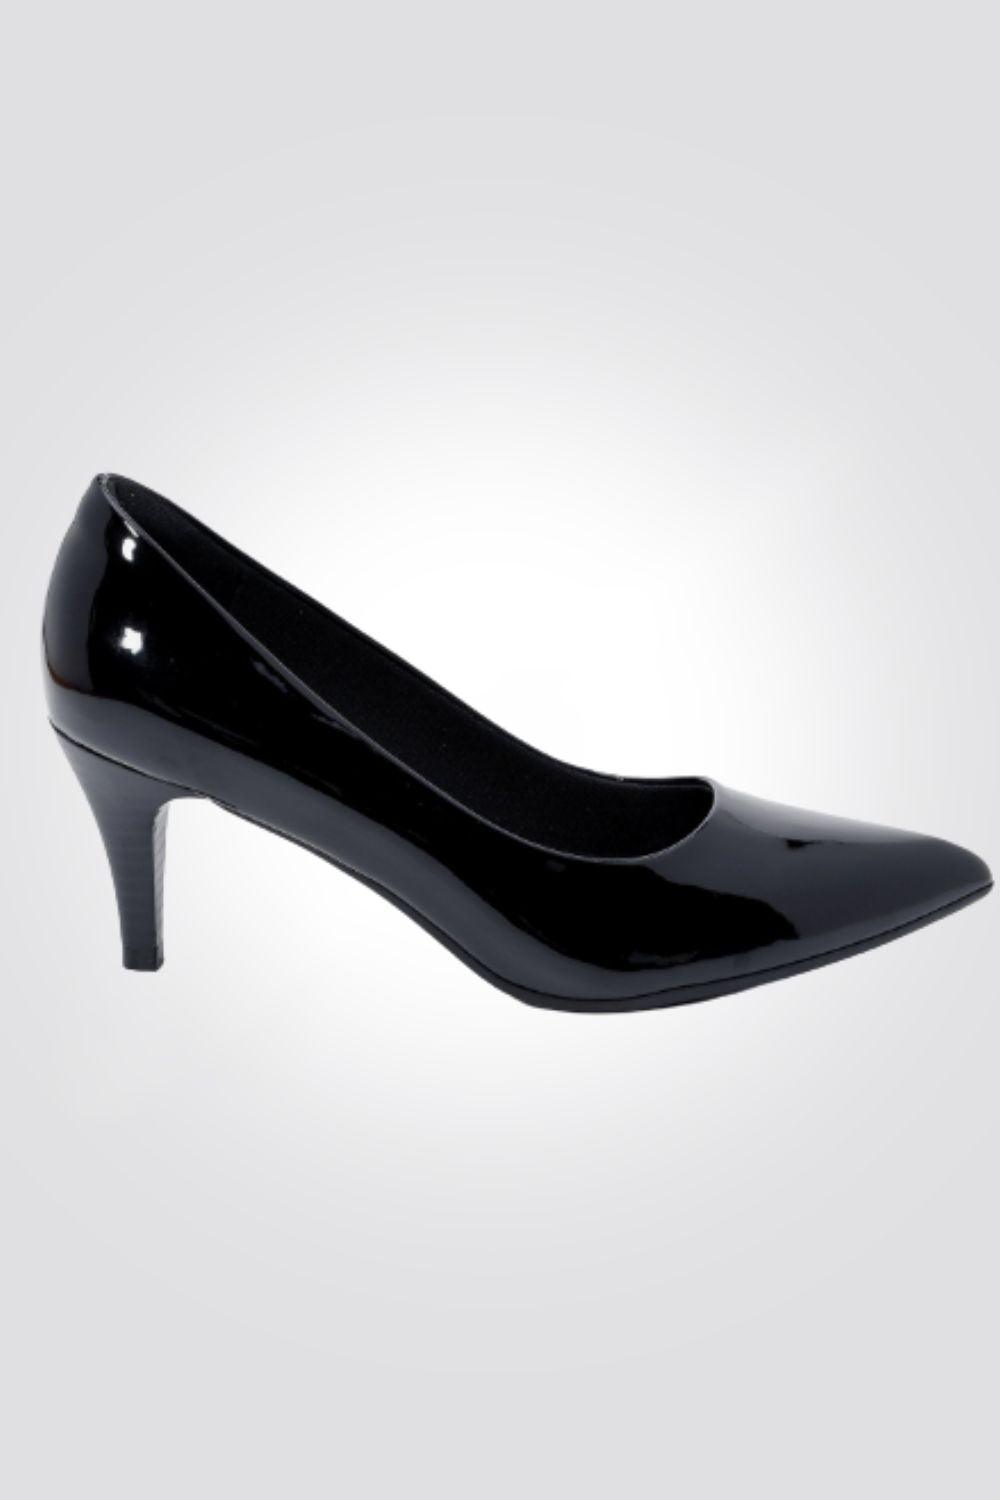 SEVENTYNINE - נעלי עקב סירה לנשים דגם 807 בצבע שחור לקה - MASHBIR//365